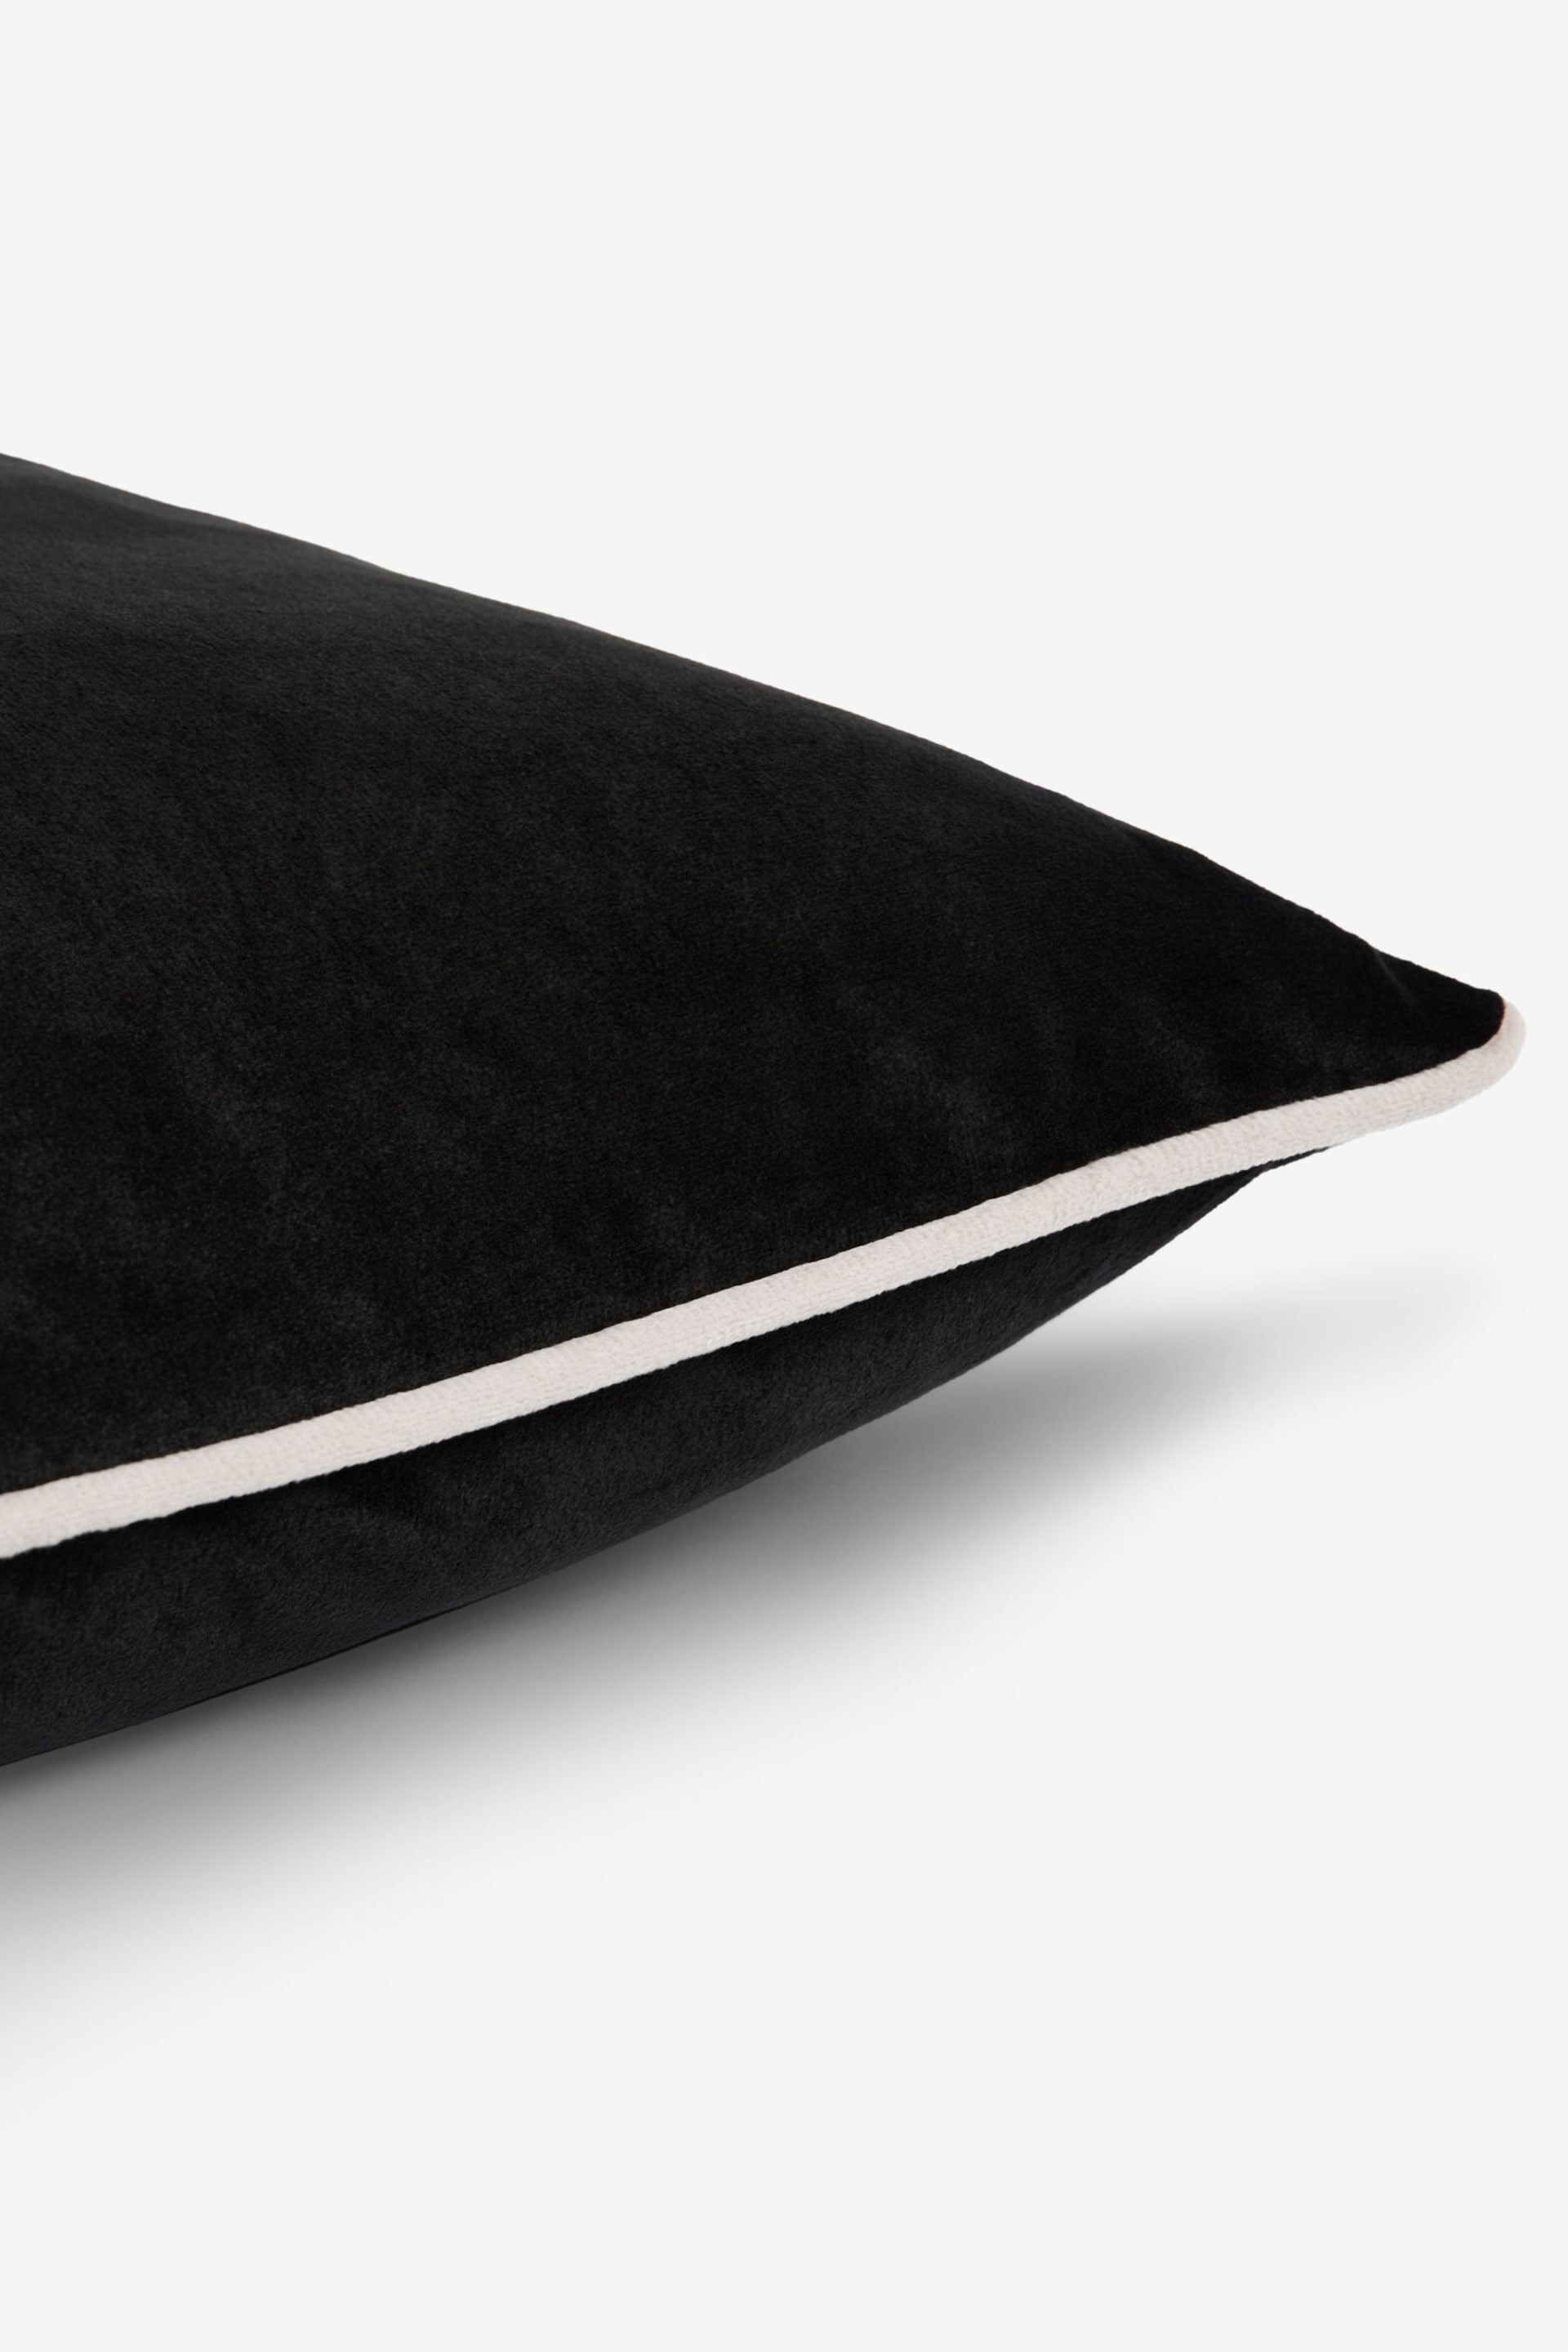 Black 50 x 50cm Matte Velvet Contrast Pipe Cushion - Image 4 of 5